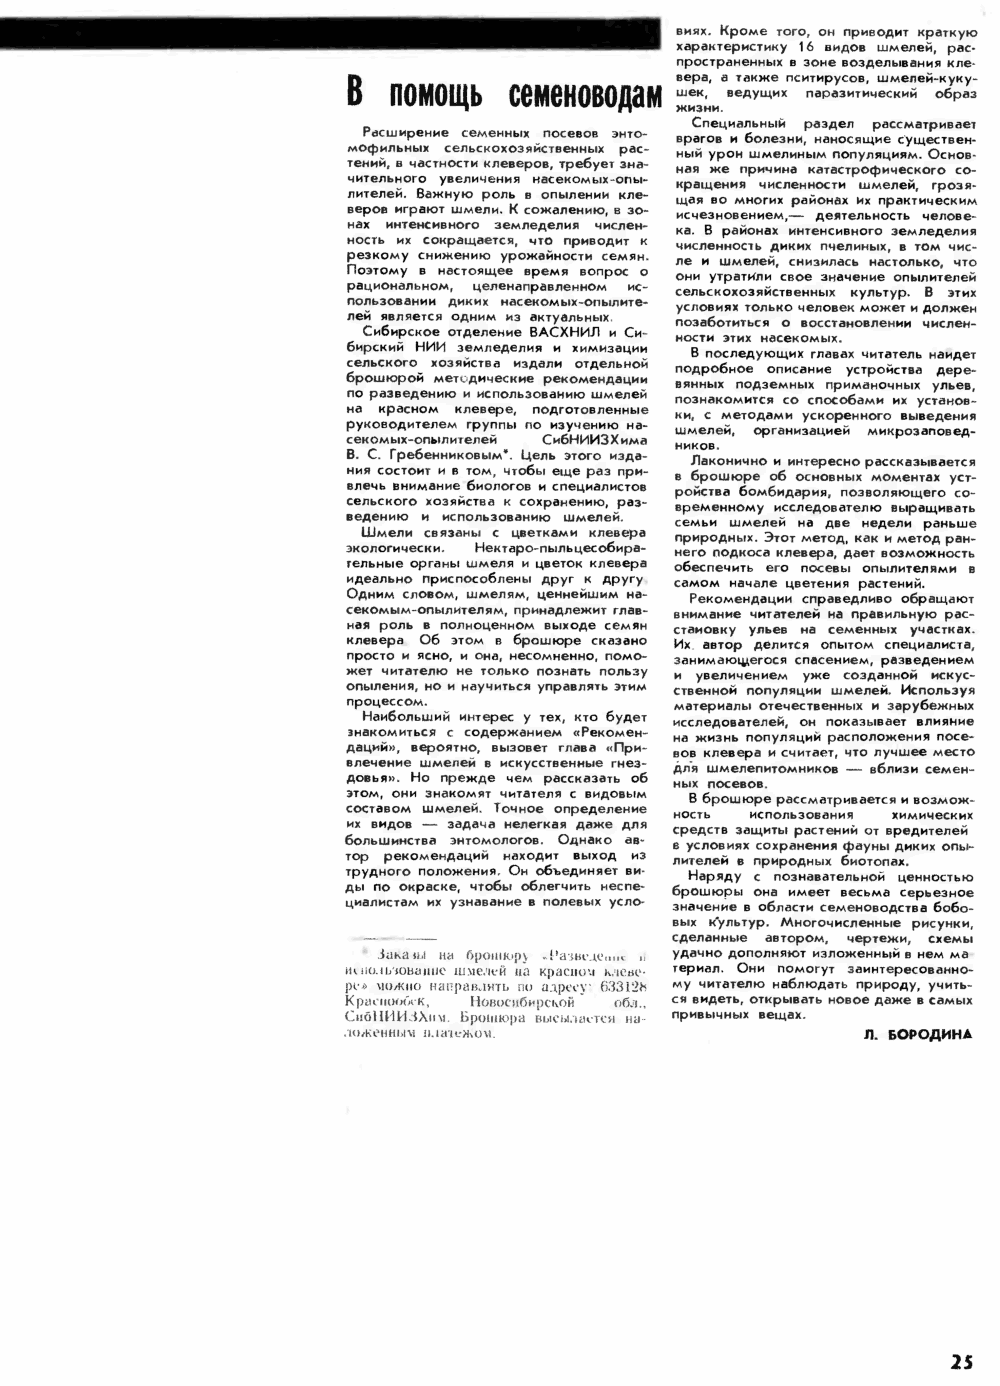 В помощь семеноводам. Л. Бородина. Пчеловодство, 1982, №9, с.25